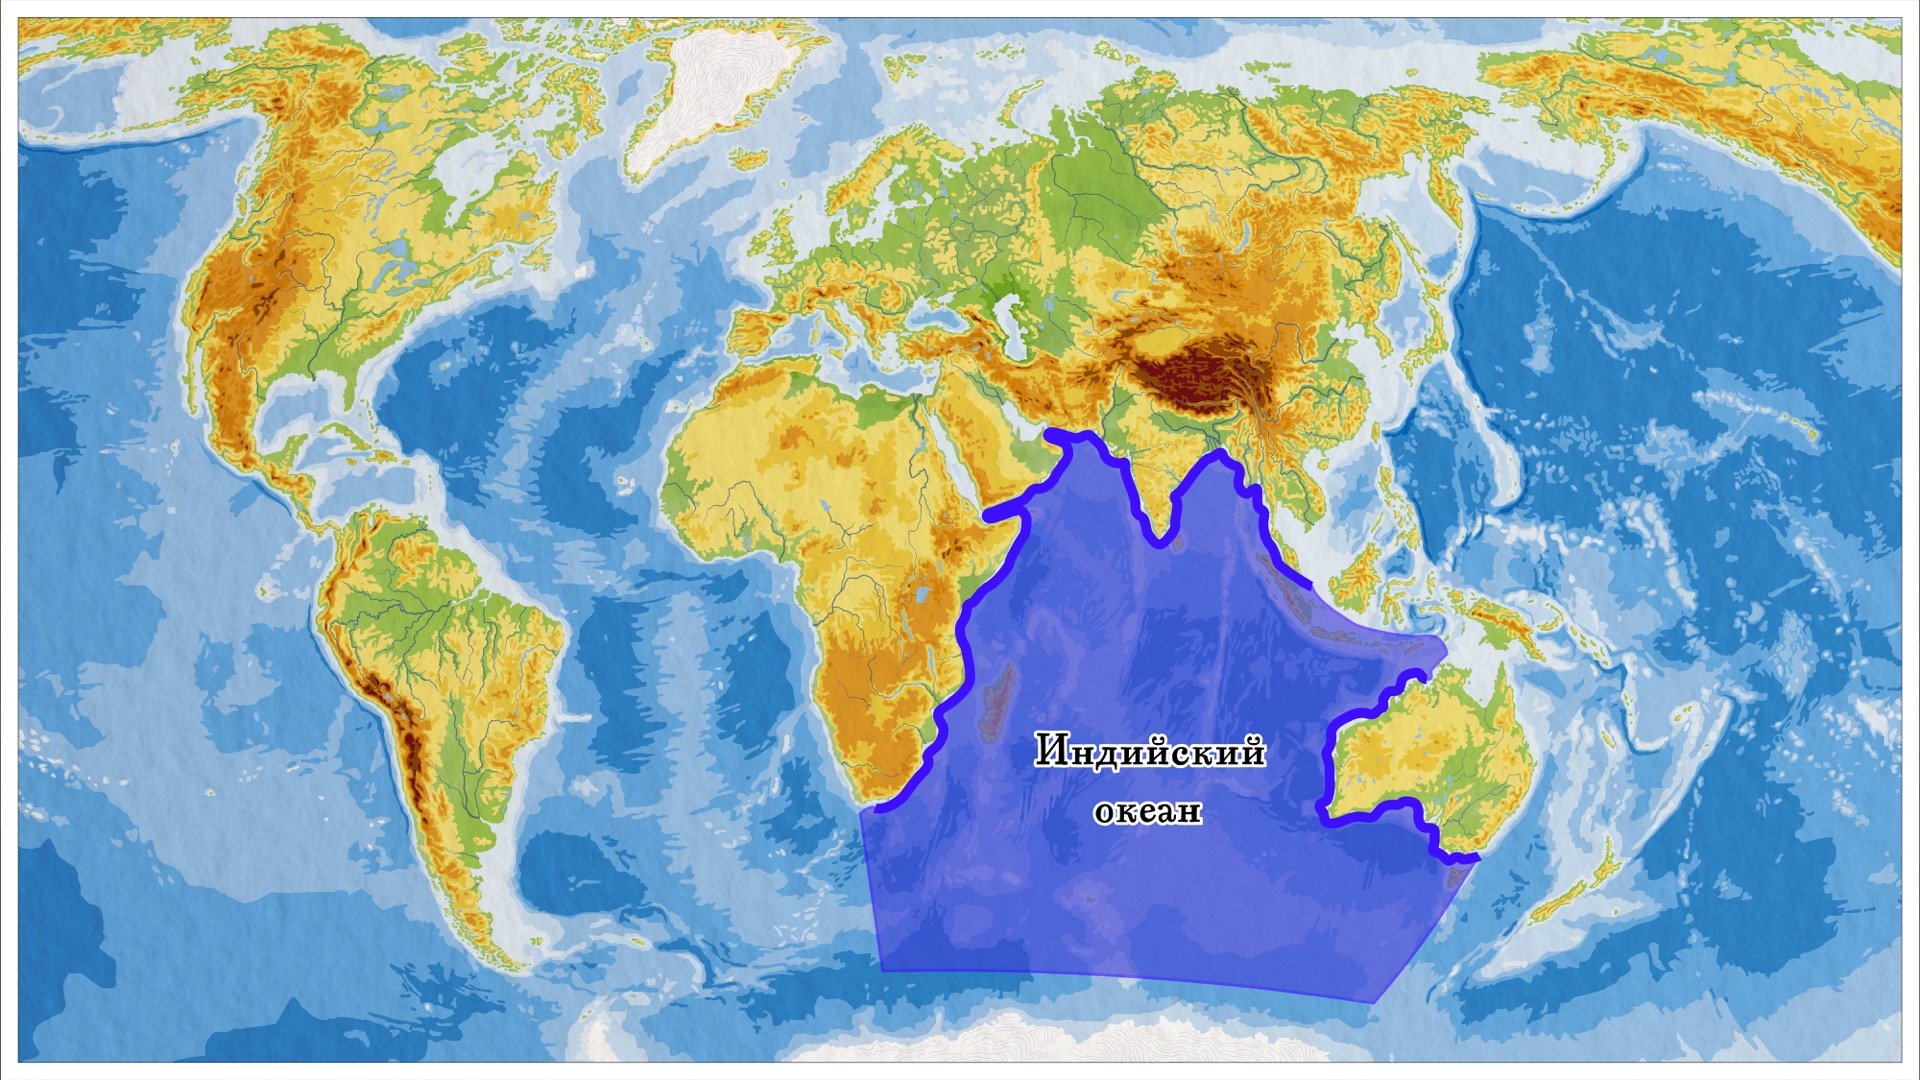 Тихий океан часть материка. Границы индийского океана на карте. Индийский океан на карте. Индийский океан наикарте.